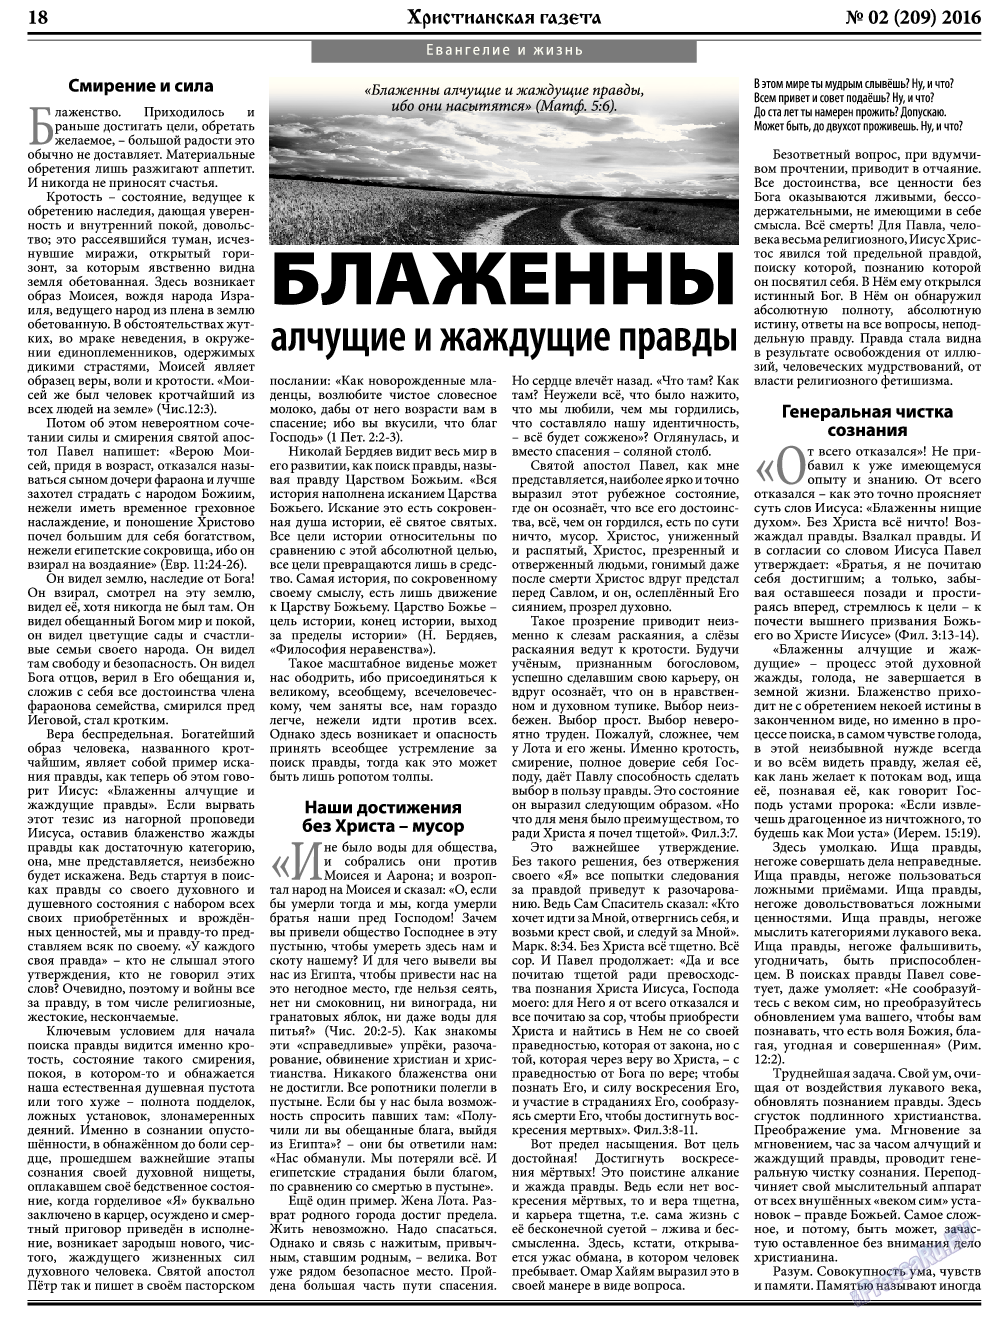 Христианская газета, газета. 2016 №2 стр.26